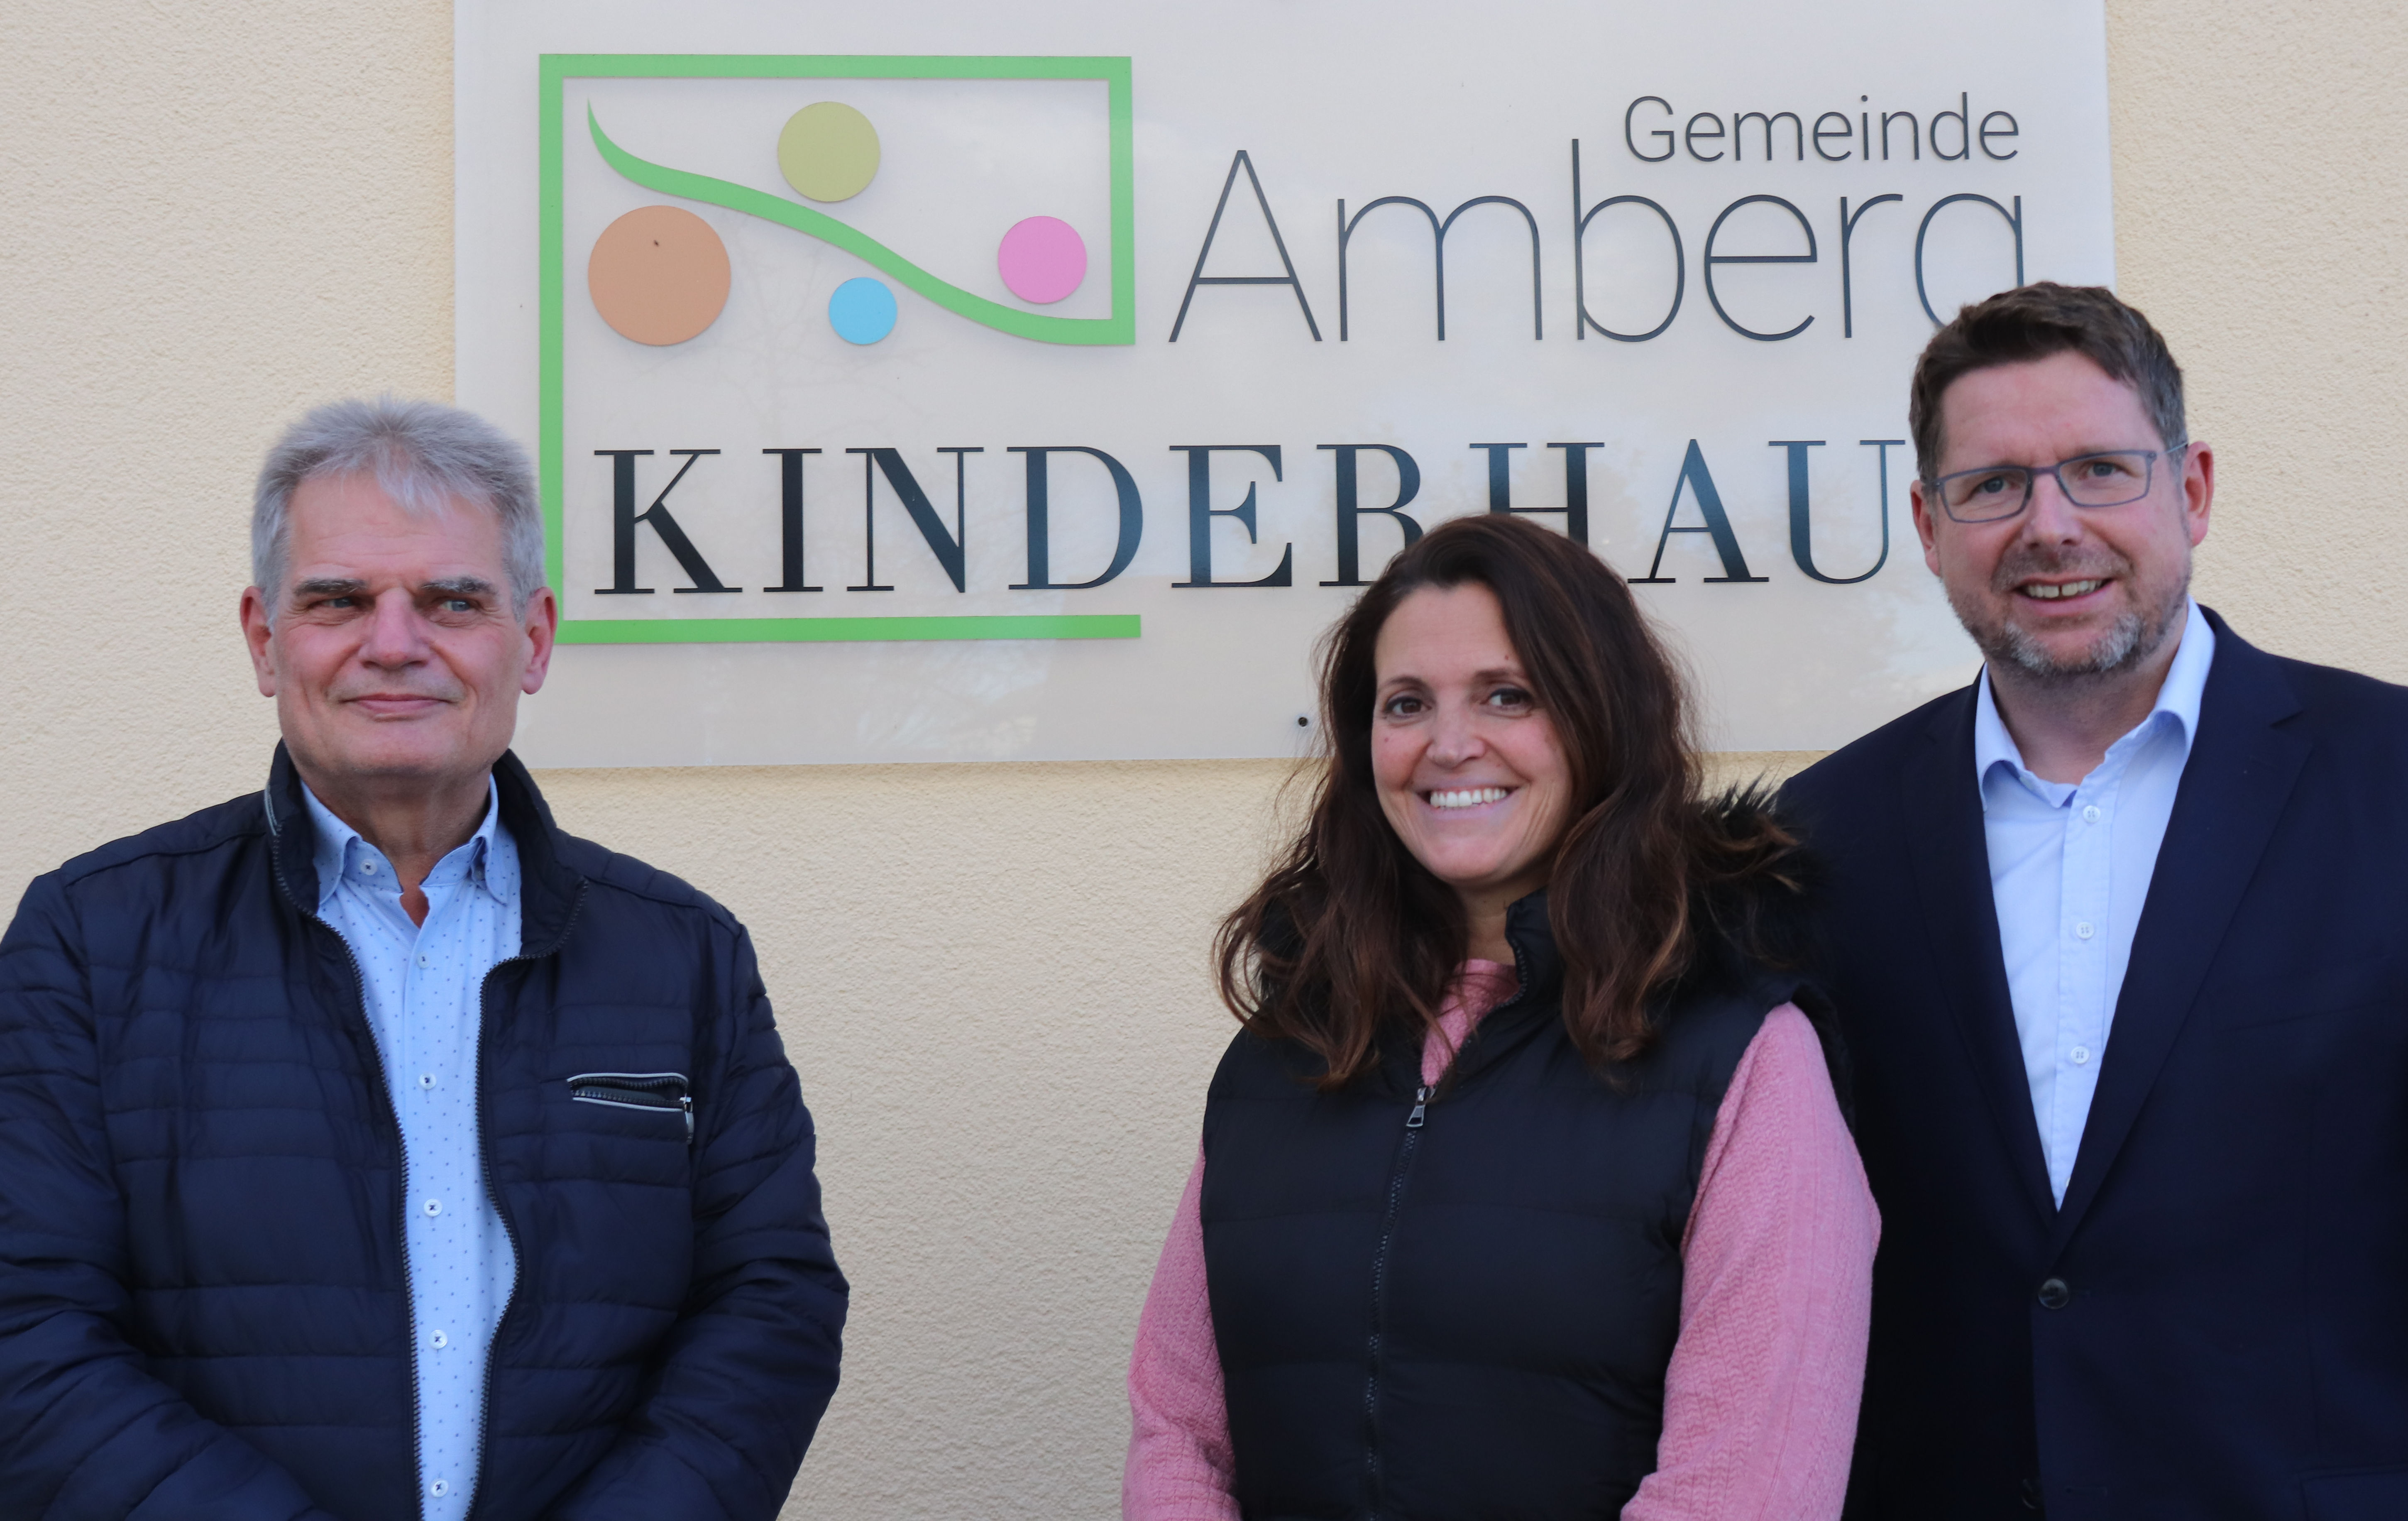 Bürgermeister Peter Kneipp und die Leiterin des Kinderhauses Amberg Martina Brem diskutierten mit Stephan Stracke über den Fachkräftemangel im Bereich der Kinderbetreuung. 